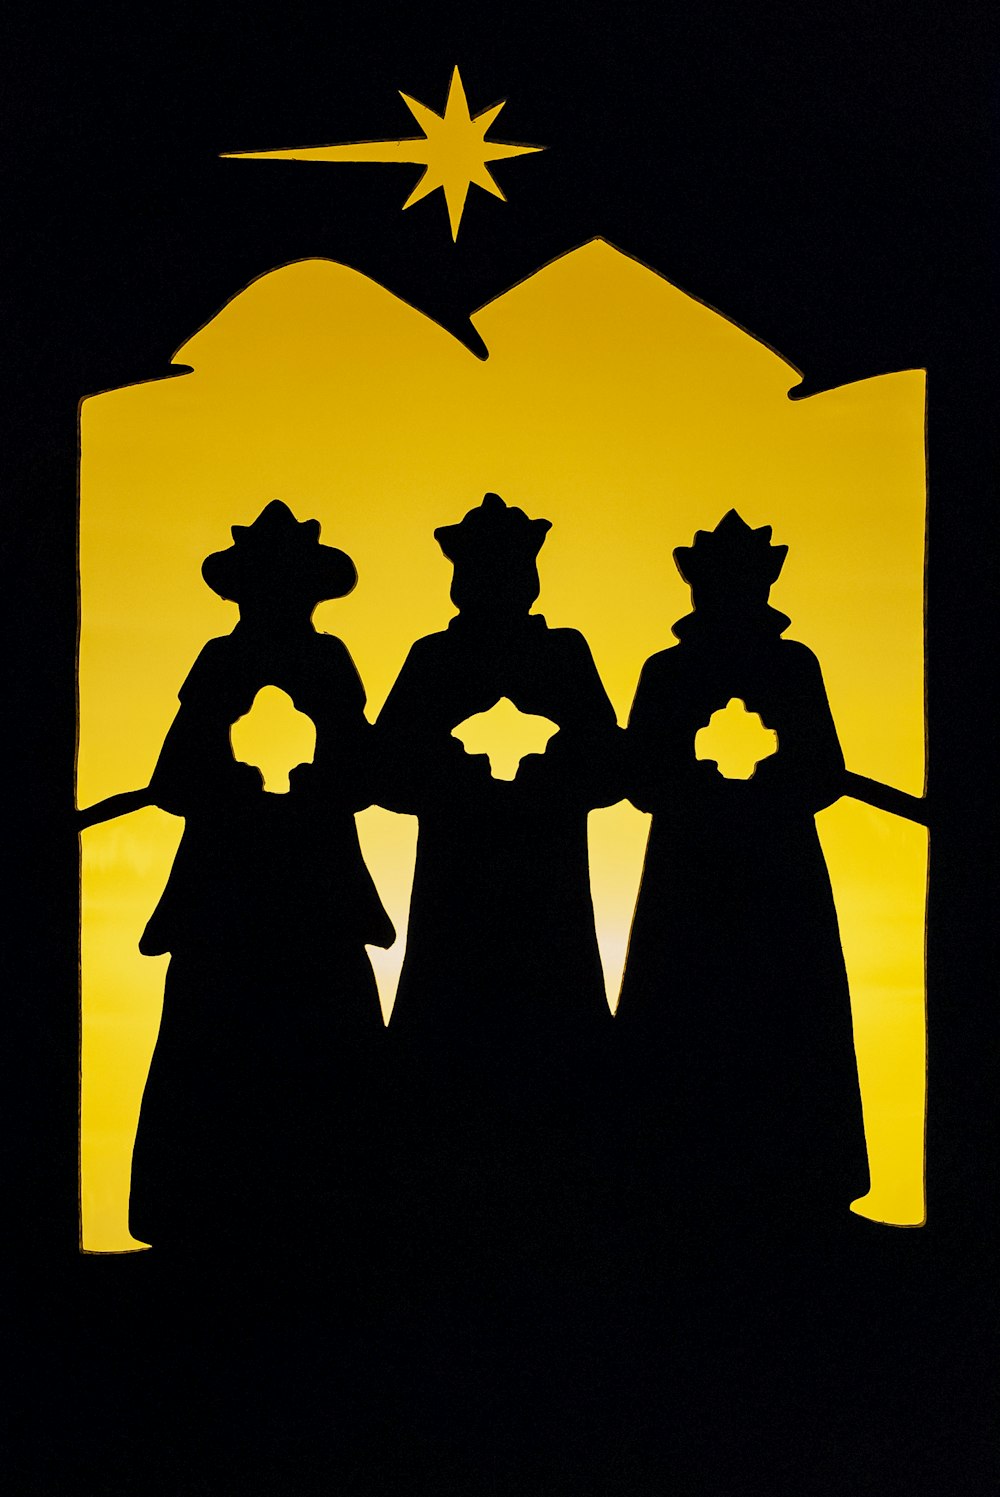 Eine Silhouette von drei Personen, die vor einem Stern stehen